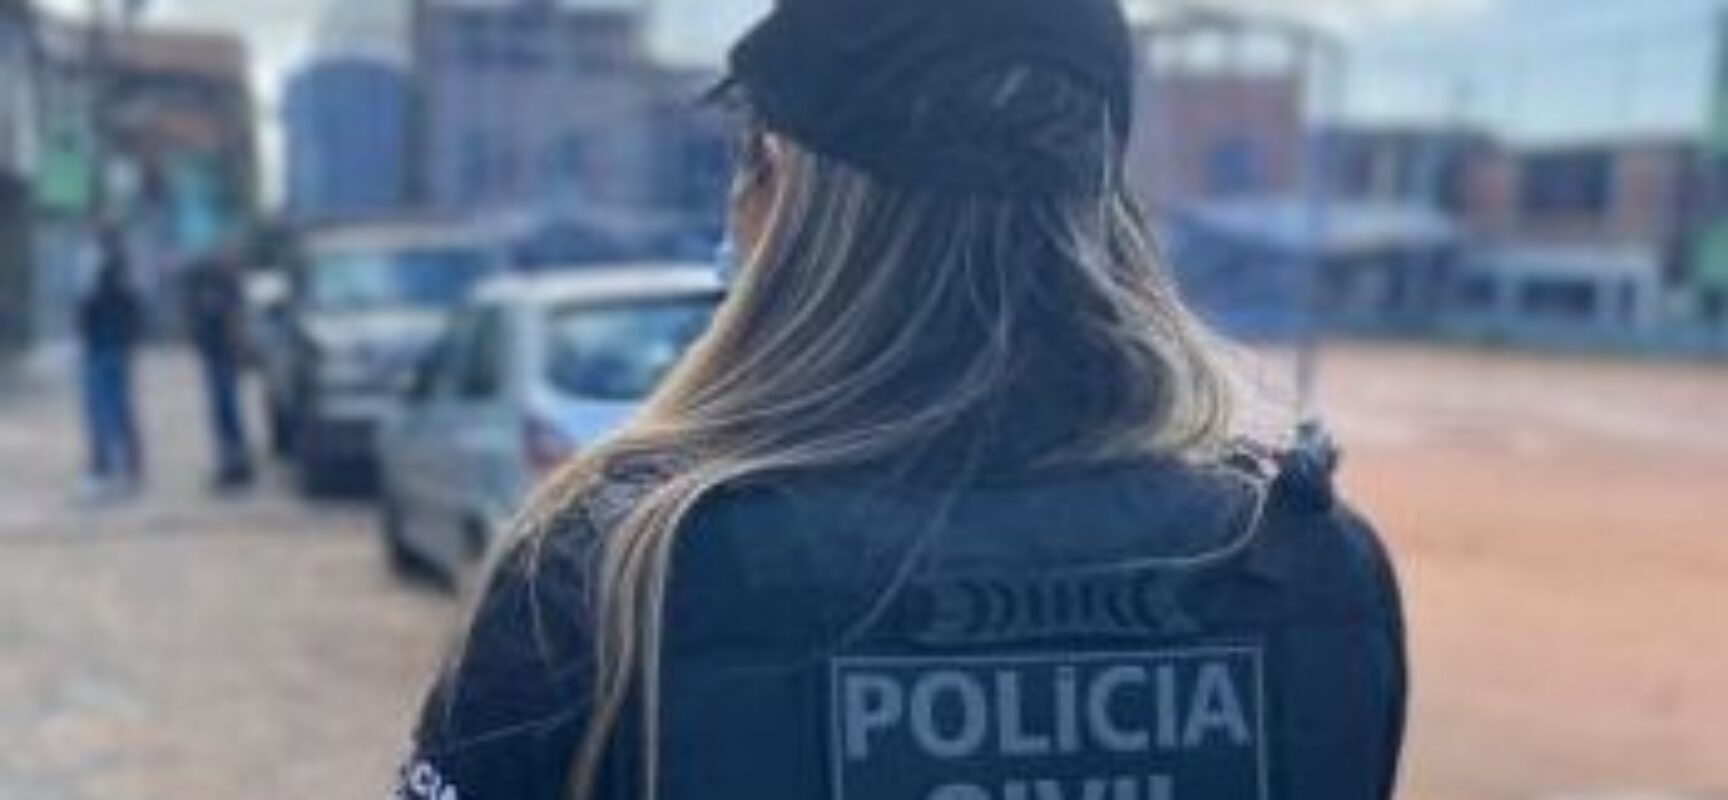 Polícia Civil integra operação nacional de combate à violência contra mulher